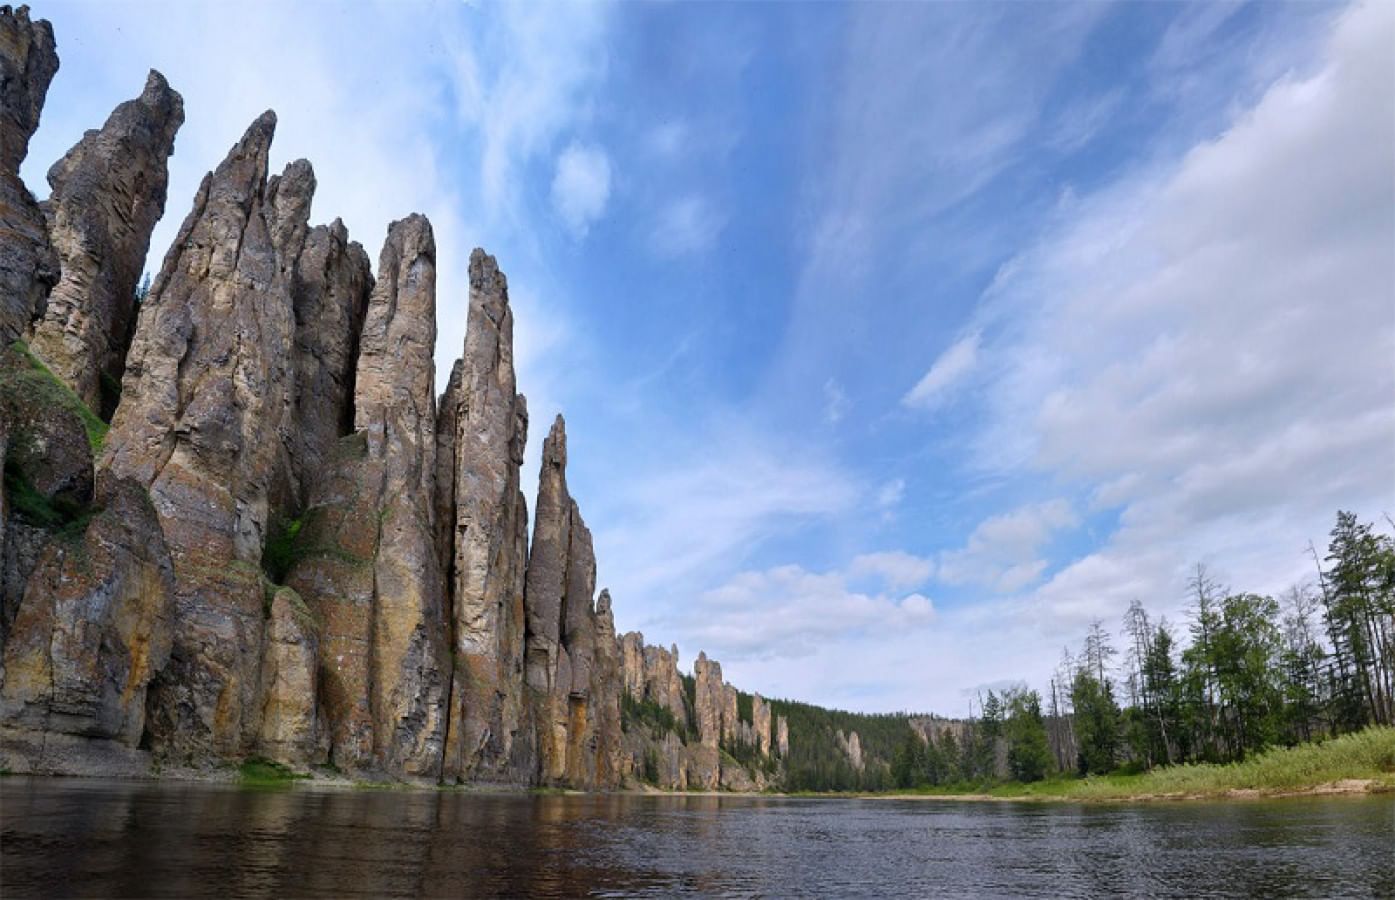 Природа этого региона удивляет. Природный парк Ленские столбы. Риродный парк «Ленские столбы». Река Лена Ленские столбы. Национальный парк «Ленские столбы» в Якутии (Россия).